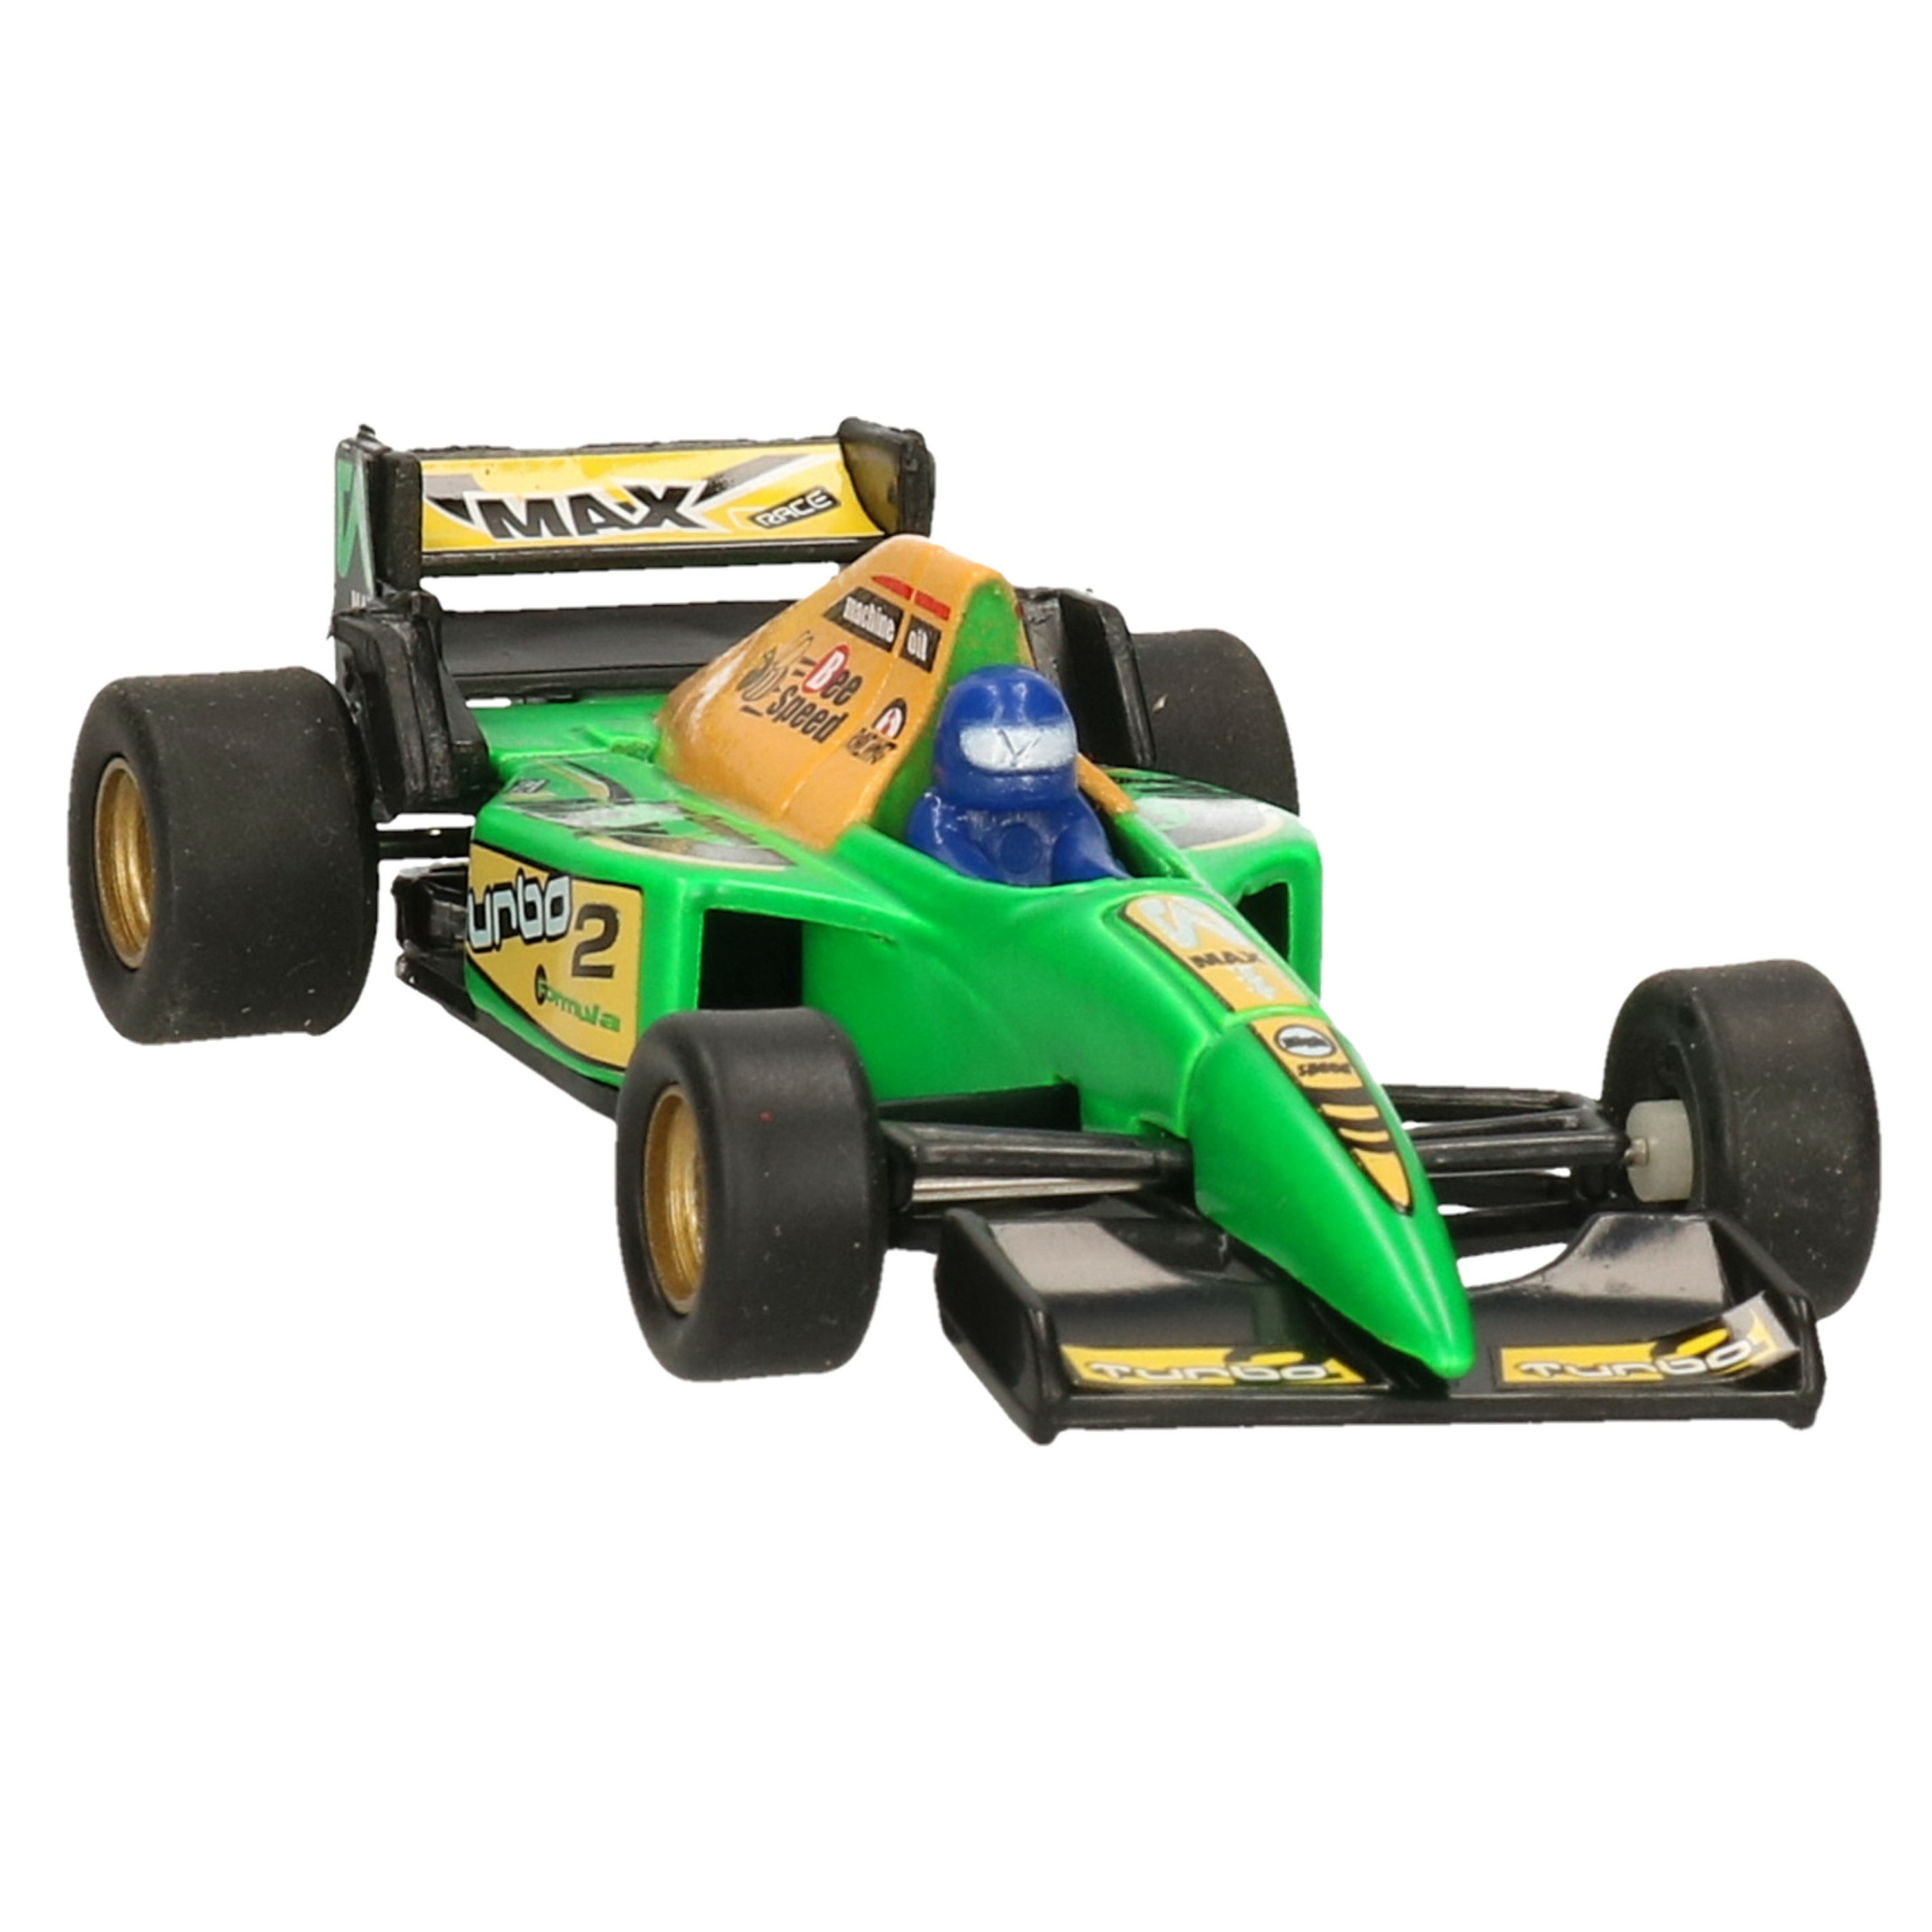 Modelauto Formule 1 wagen groen 10 cm